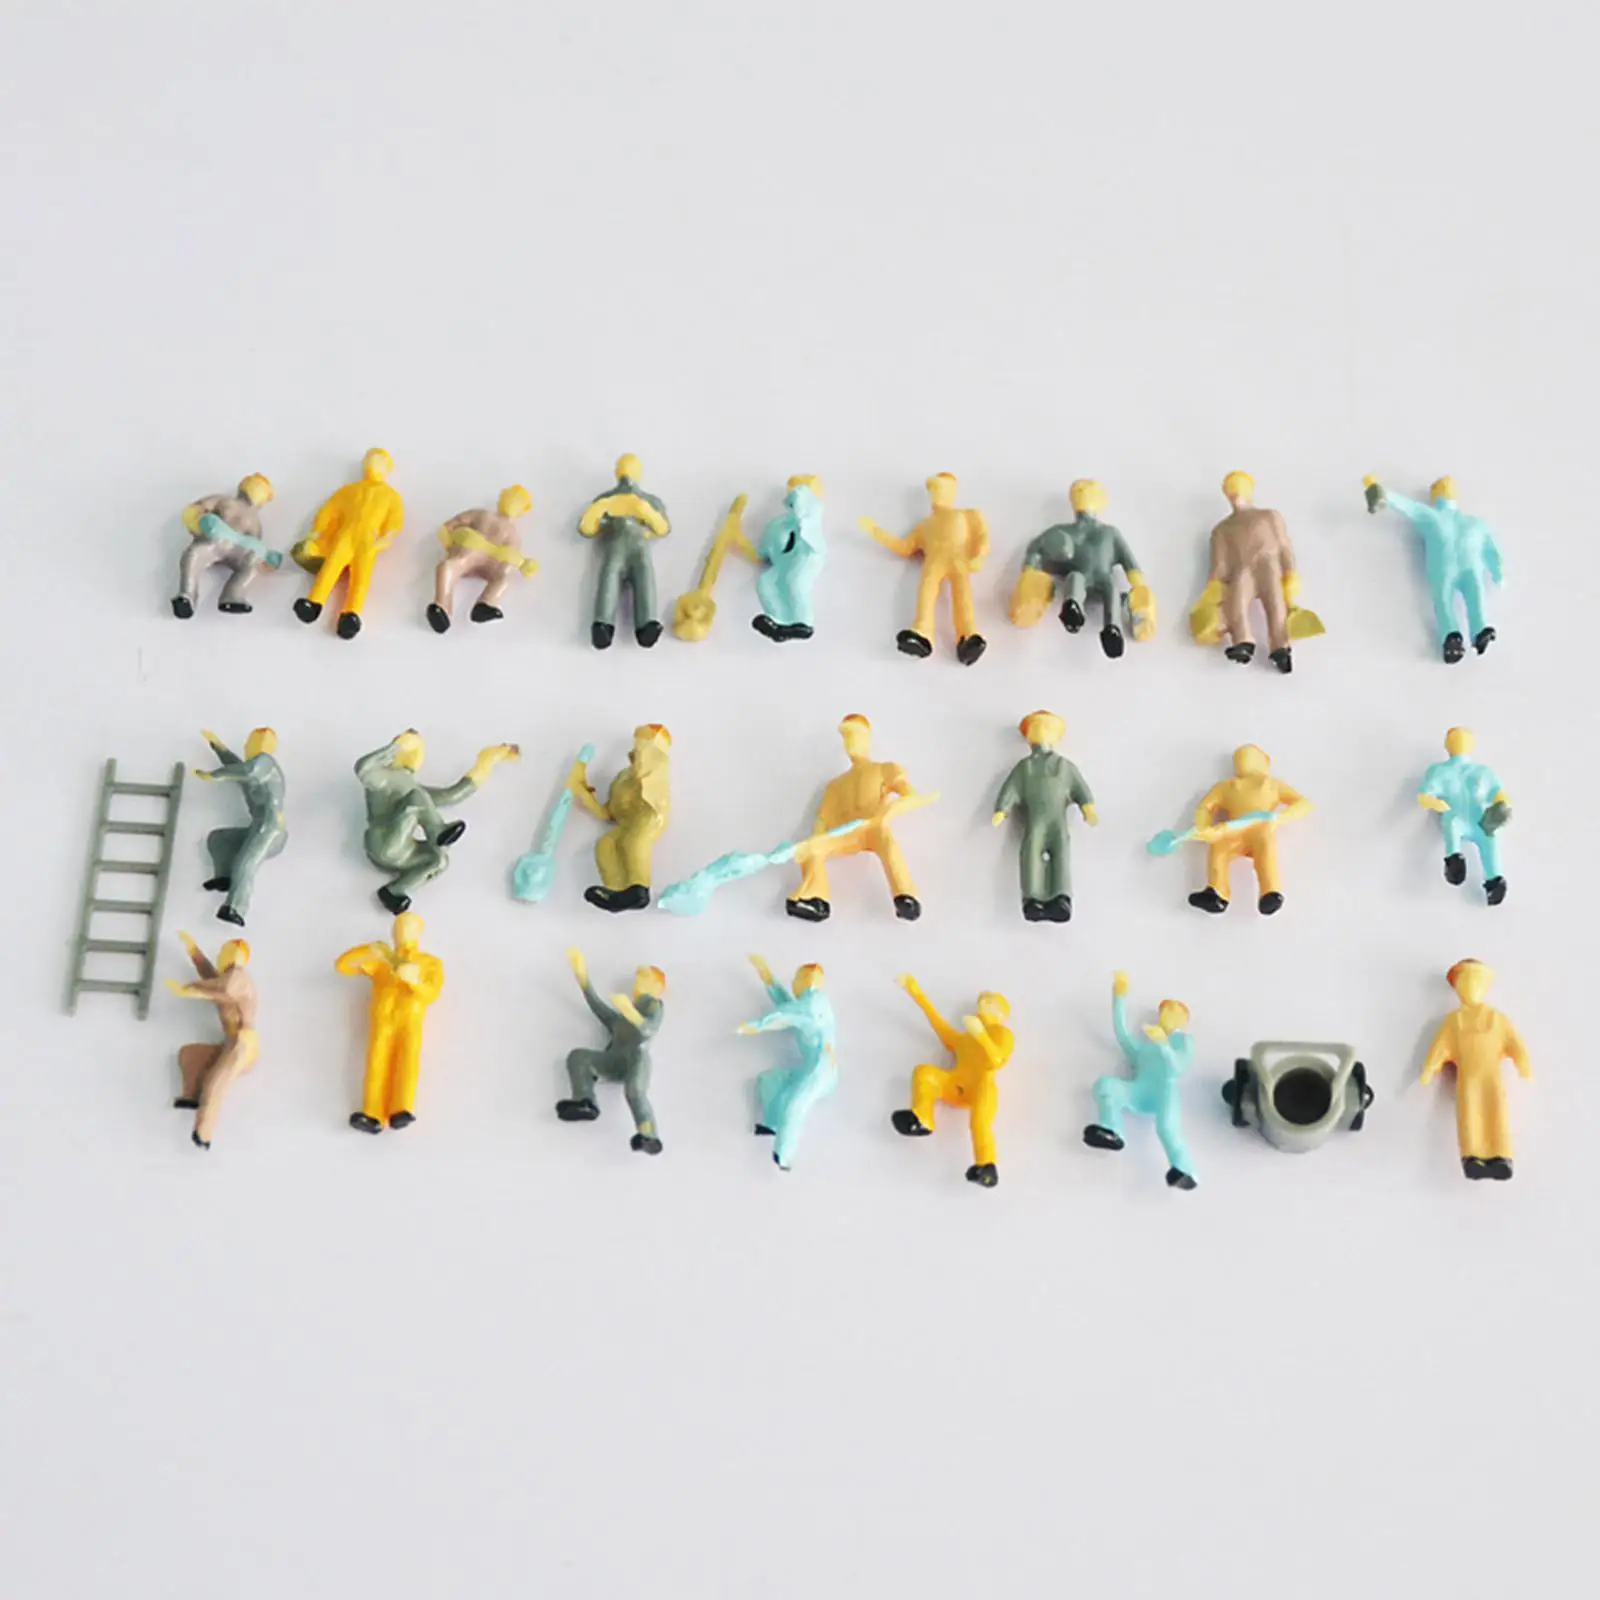 25Pcs 1/87 Miniature Model Railroad Worker Figures Building HO Scale Desktop Ornament Hand Painted Figurines Ornament Supplies